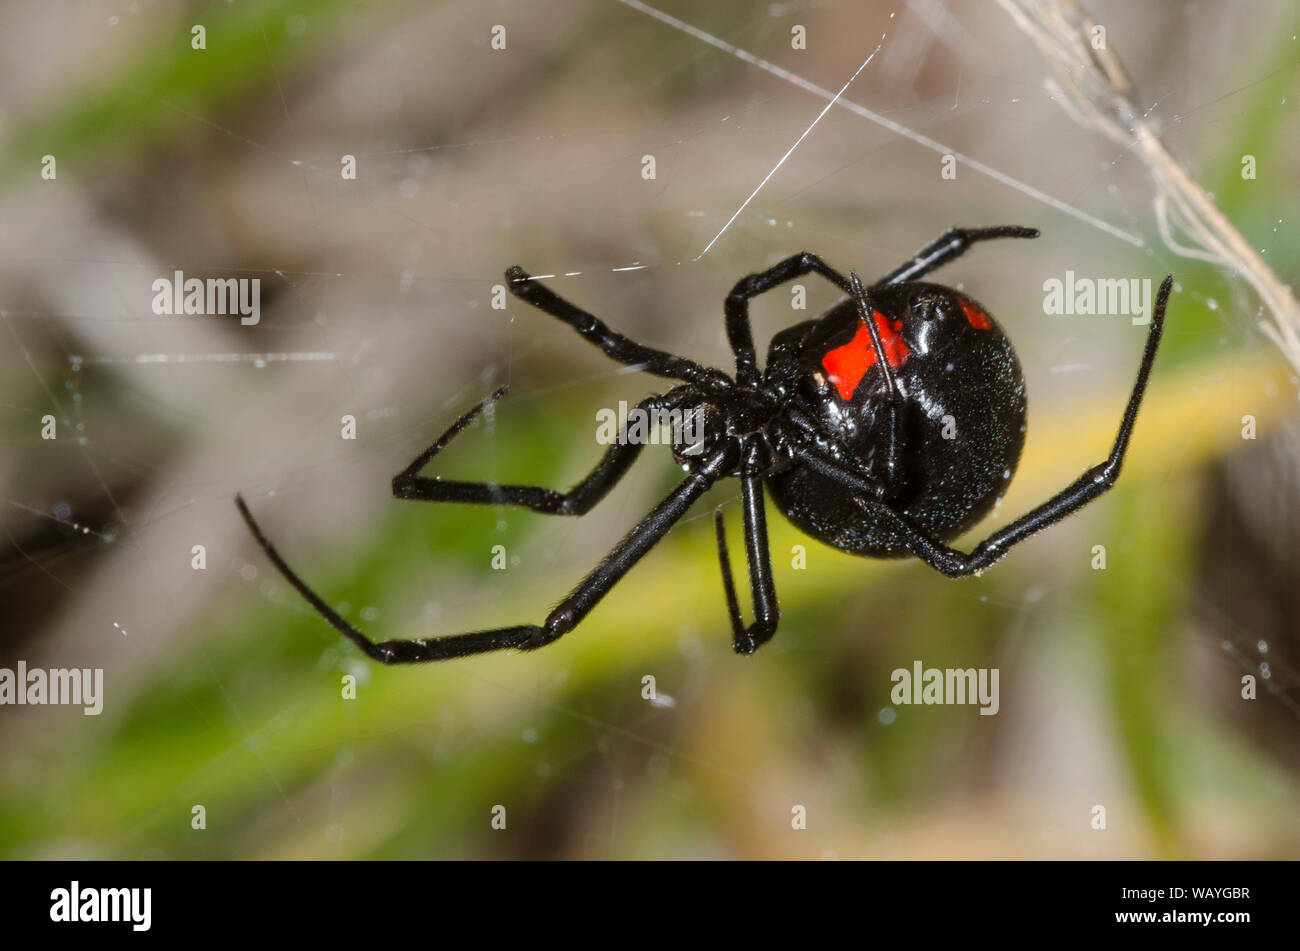 Southern Black Widow, Latrodectus mactans, building web Stock Photo